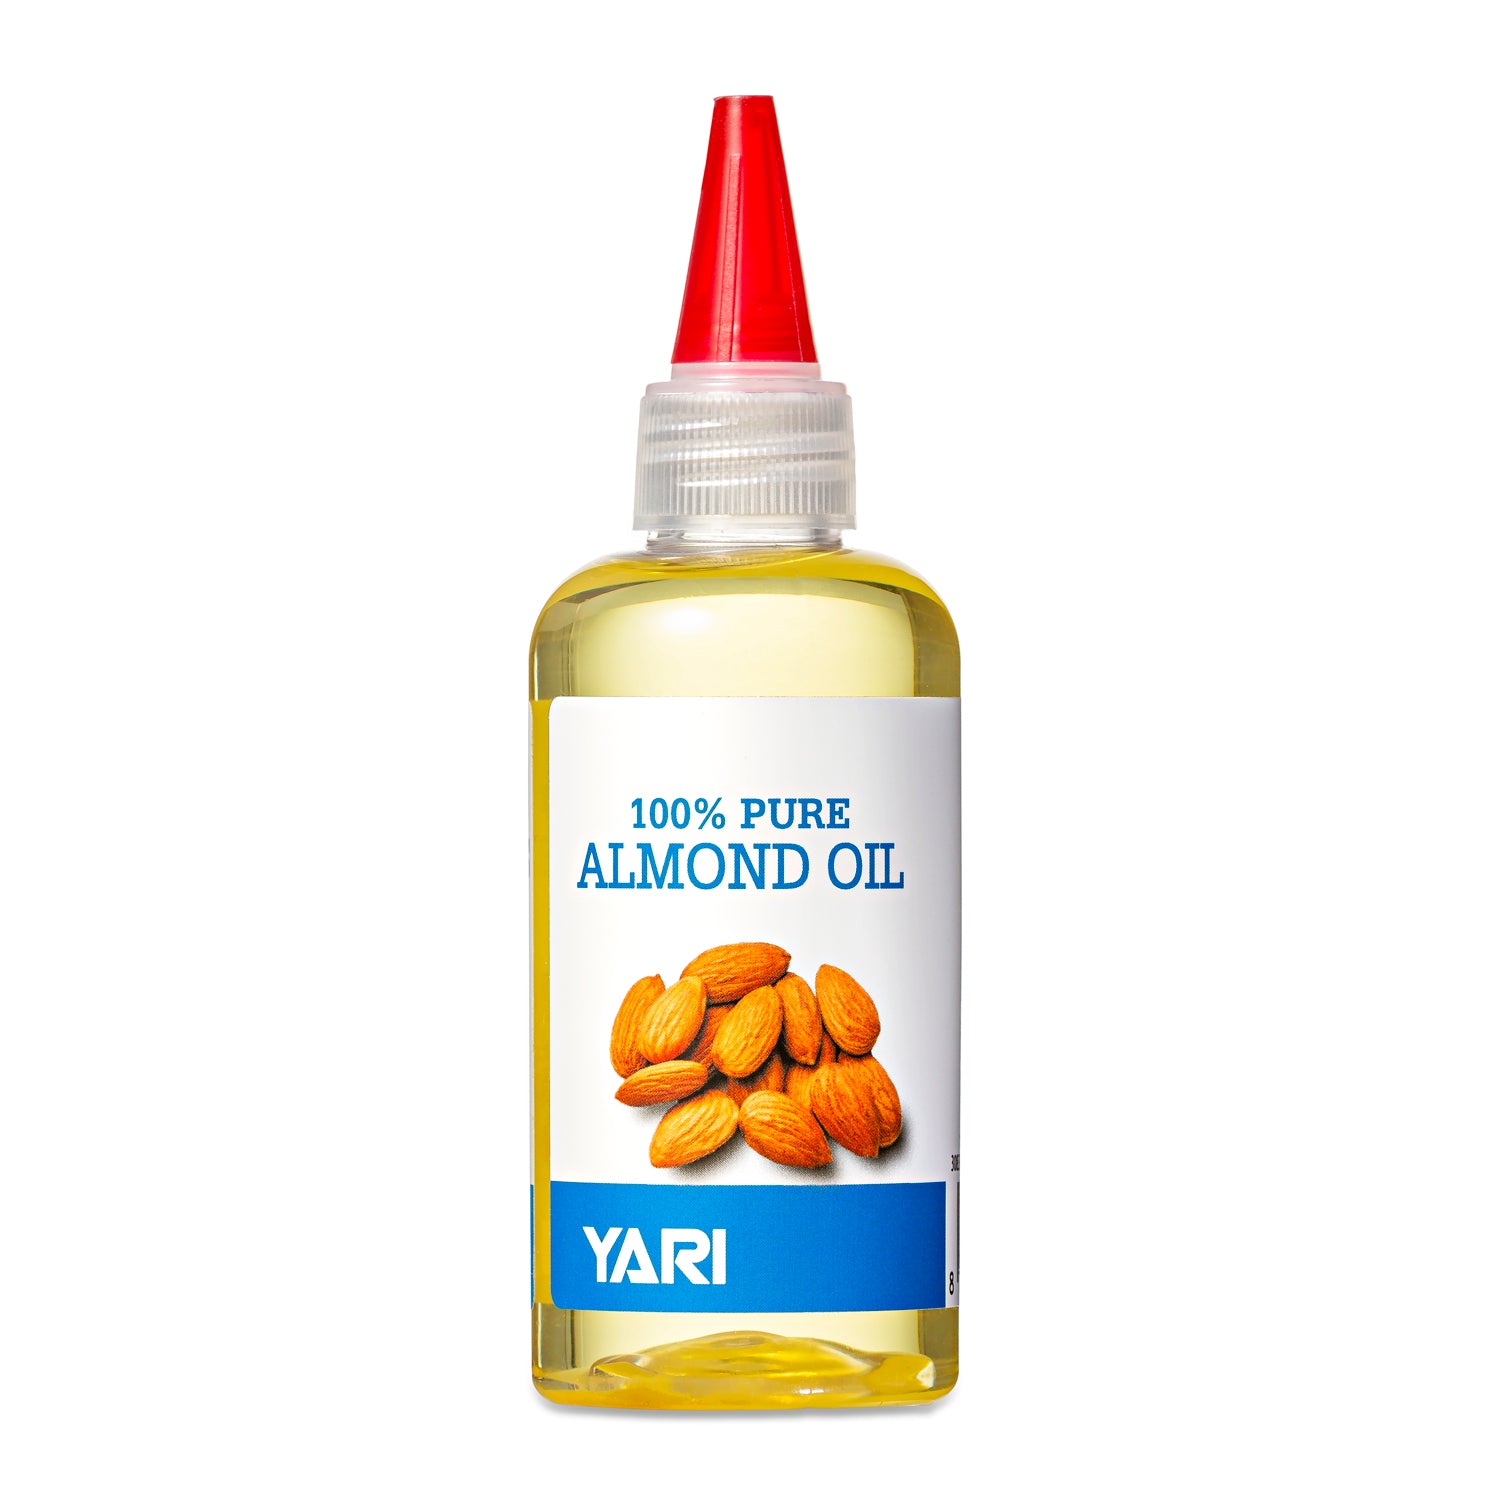 Yari - 100% Pure Almond Oil 110ml